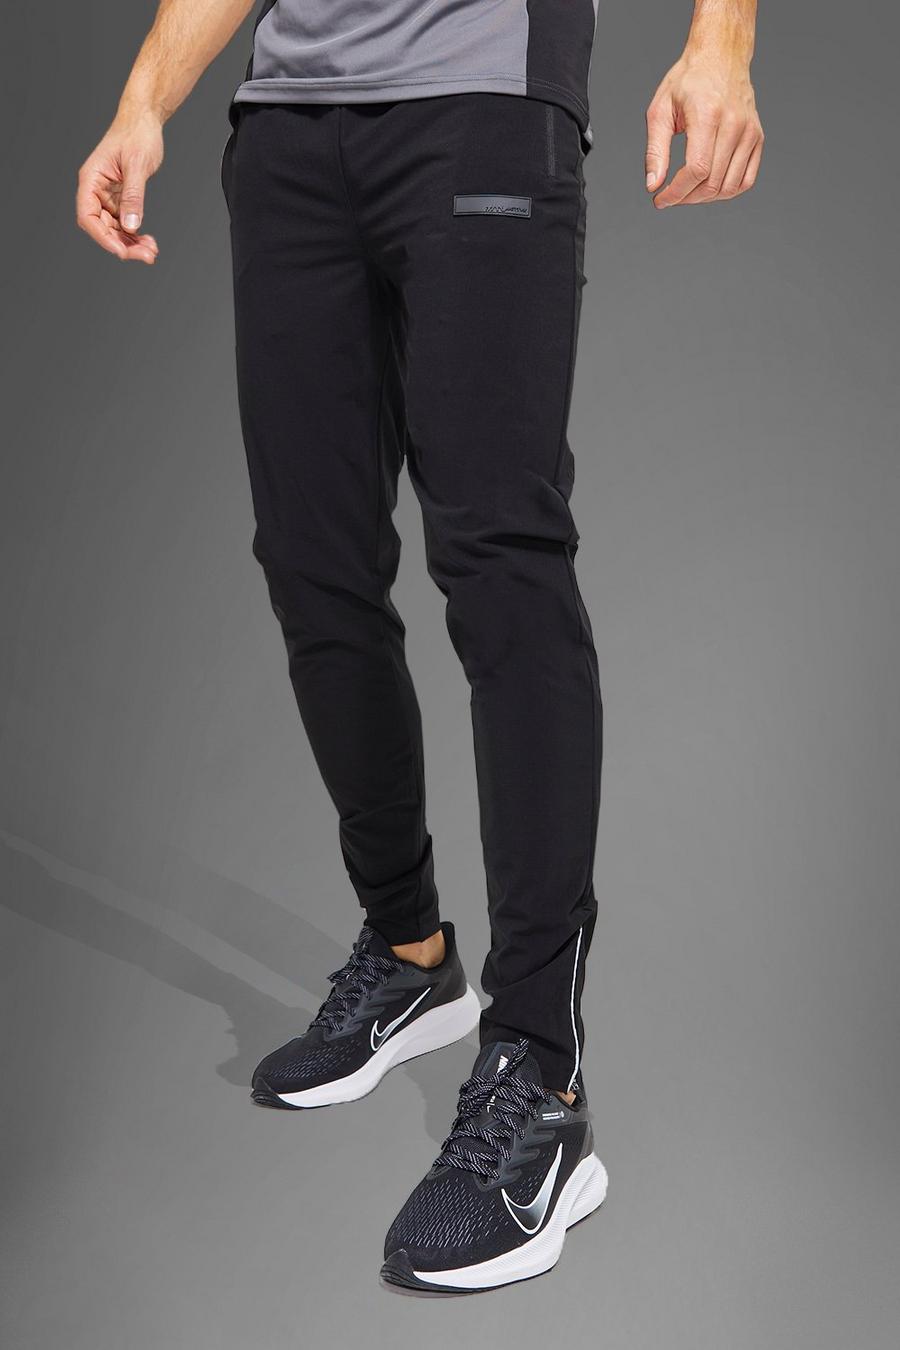 Pantalón deportivo Tall MAN Active texturizado, Black image number 1